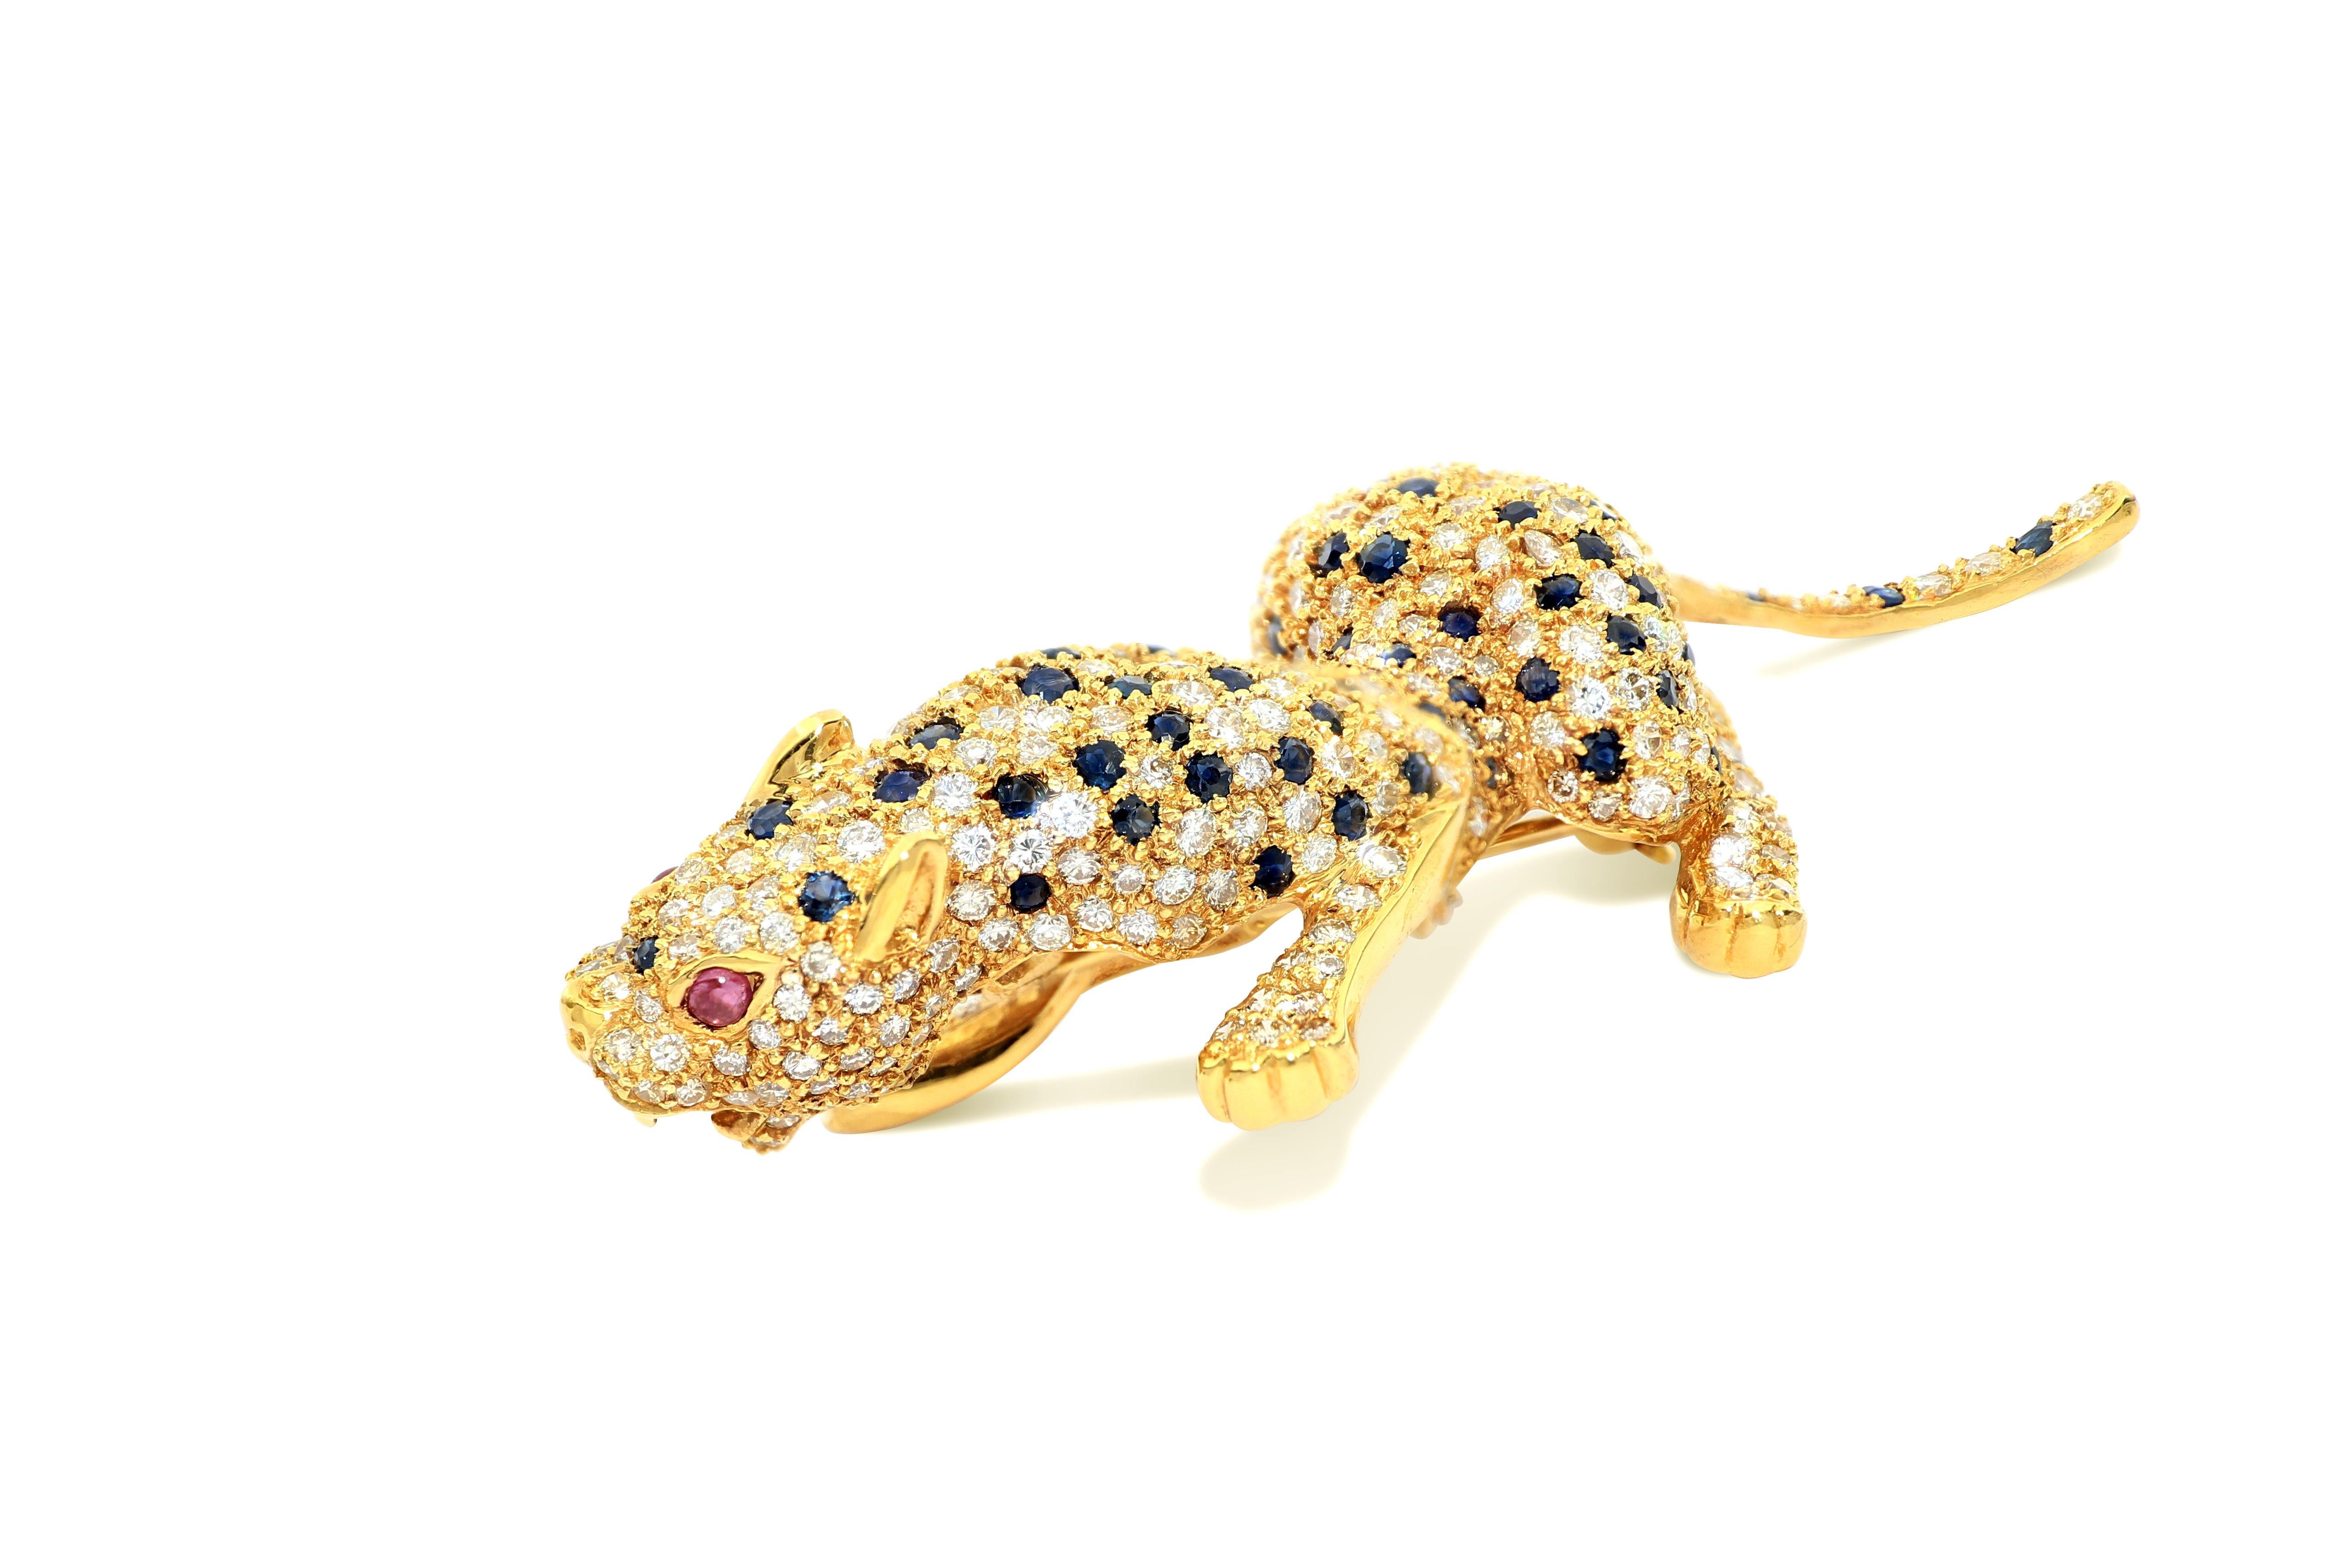 
Dies ist eine prächtige Panther-Diamant-Brosche aus 18 Karat Gelbgold, besetzt mit 354 weißen Diamanten von insgesamt 6,97 Karat, 112 blauen Saphiren von 5,95 Karat und zwei Augen mit zwei Rubinen als Intarsien. Die Panther-Brosche ist lebensecht,